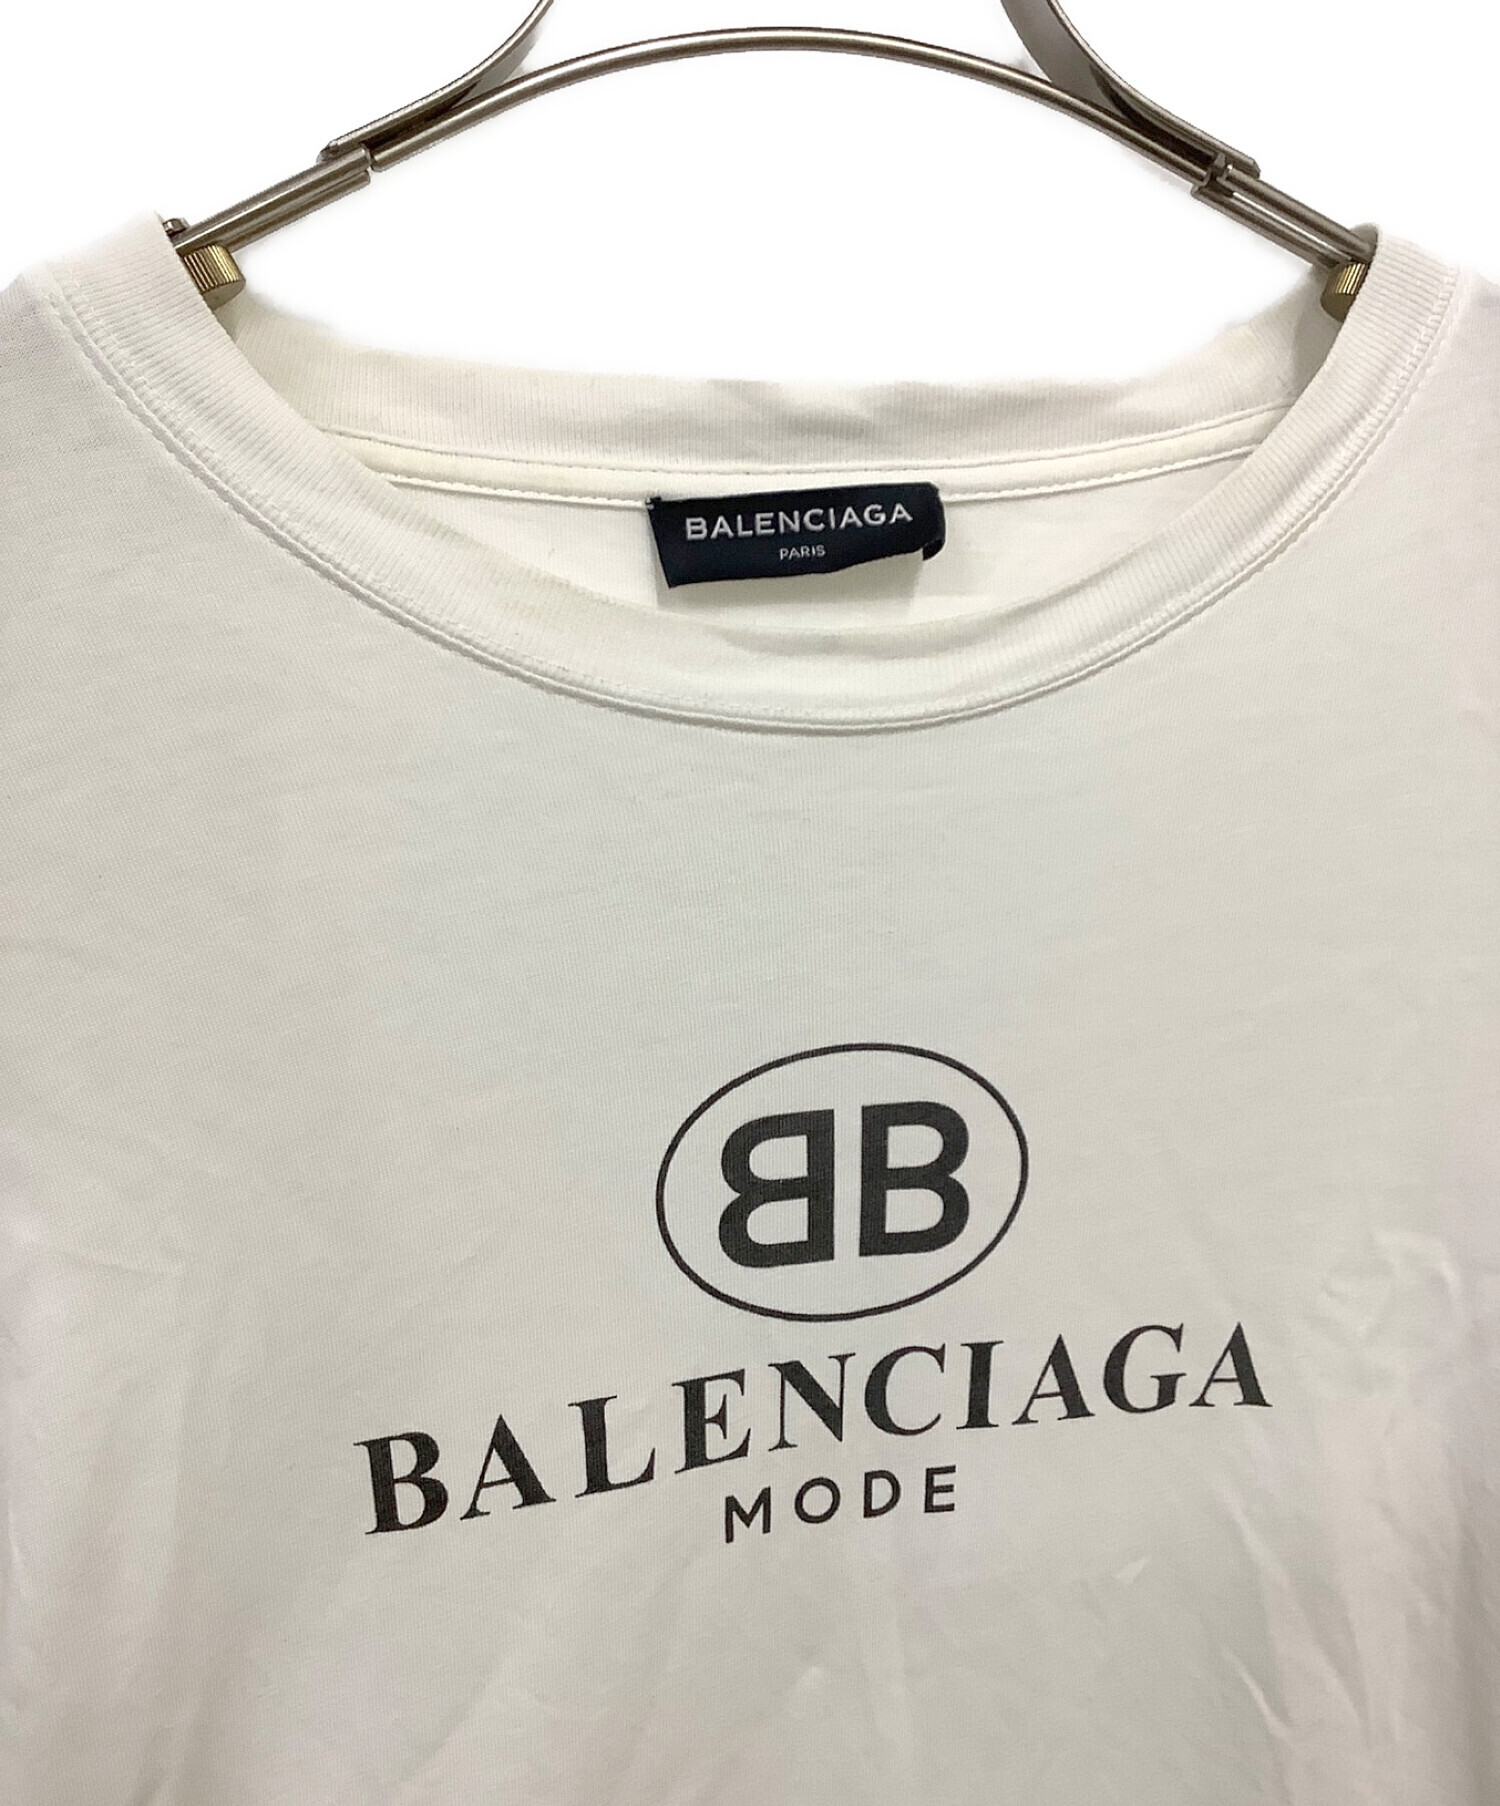 BALENCIAGA (バレンシアガ) BBロゴプリントカットソー ホワイト サイズ:M